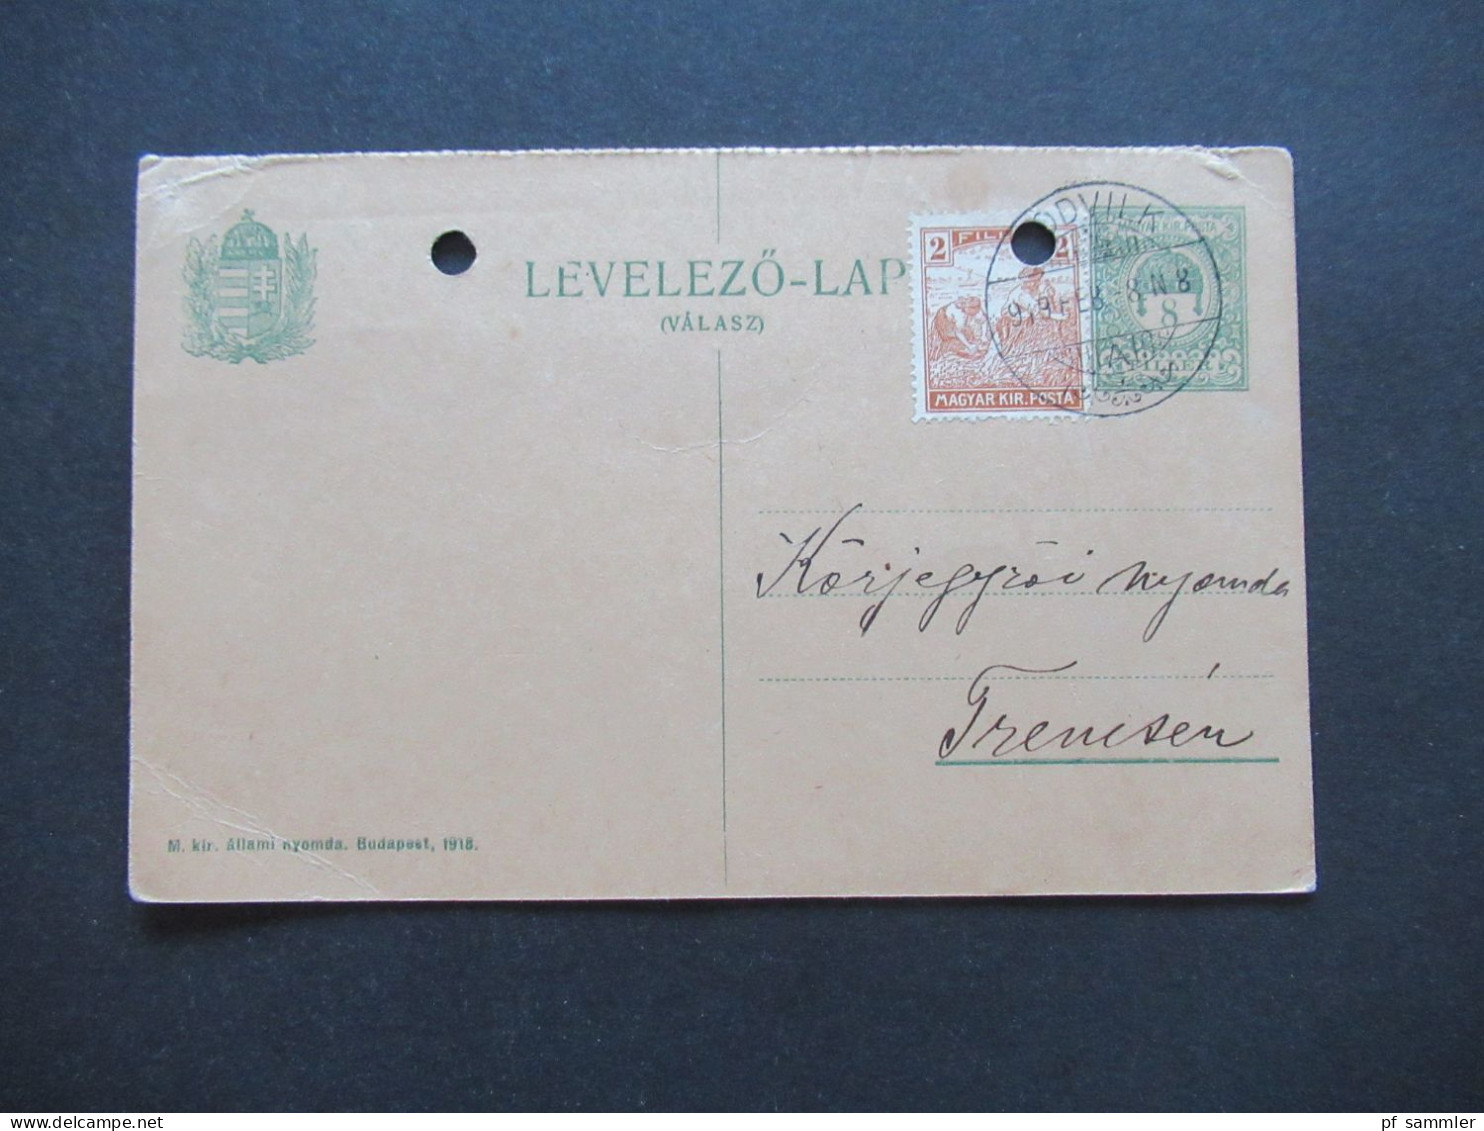 Ungarn 1919 GA / Levelezö Lap (Valasz) Mit 1x Zusatzfrankatur Stempel Podvilk / Podwilk Polen ?! - Briefe U. Dokumente